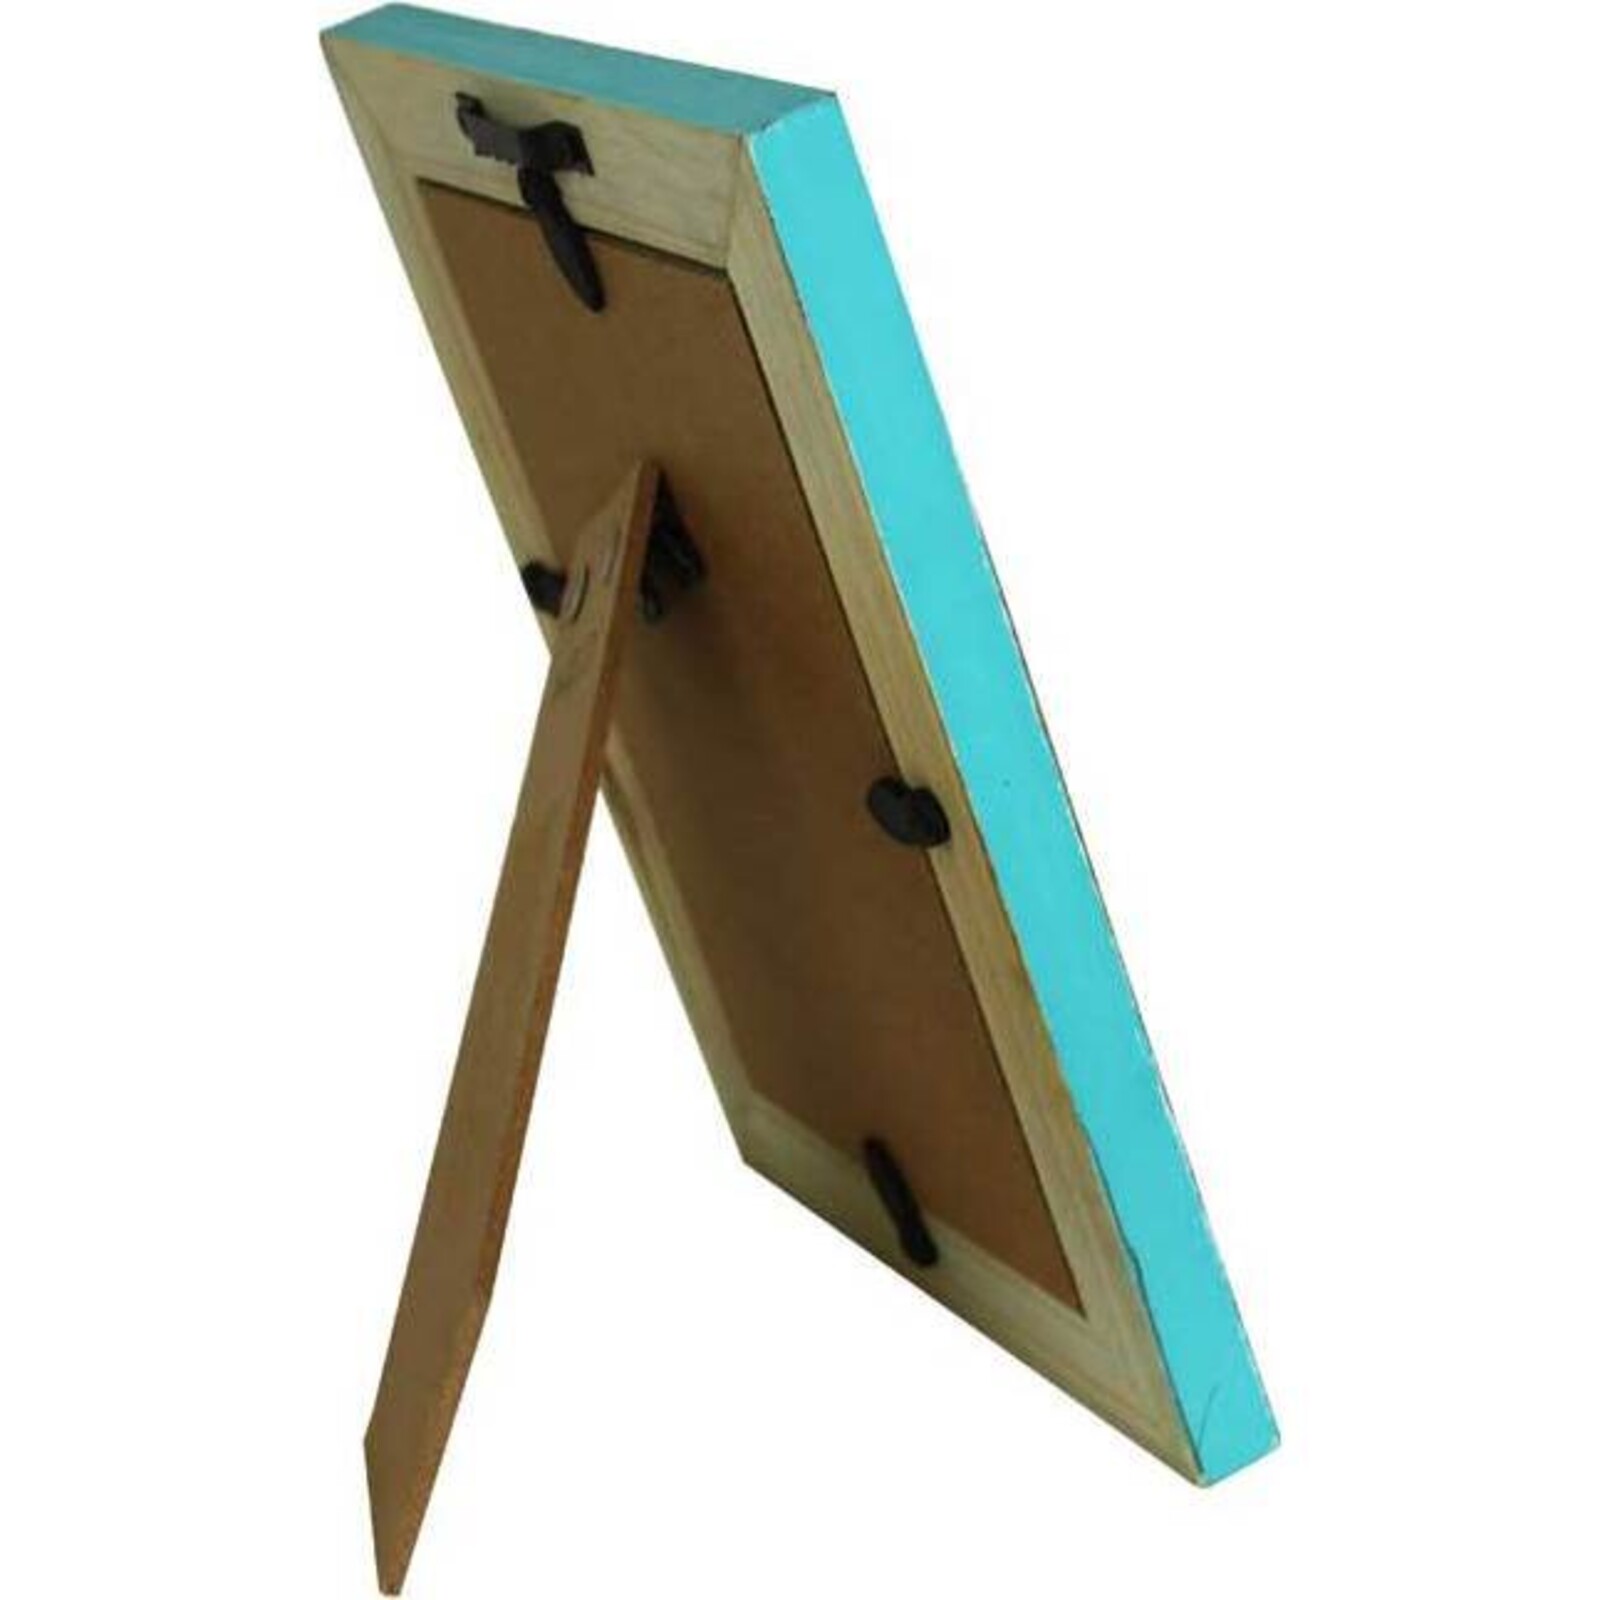 Wooden Frame Teal - 4x6